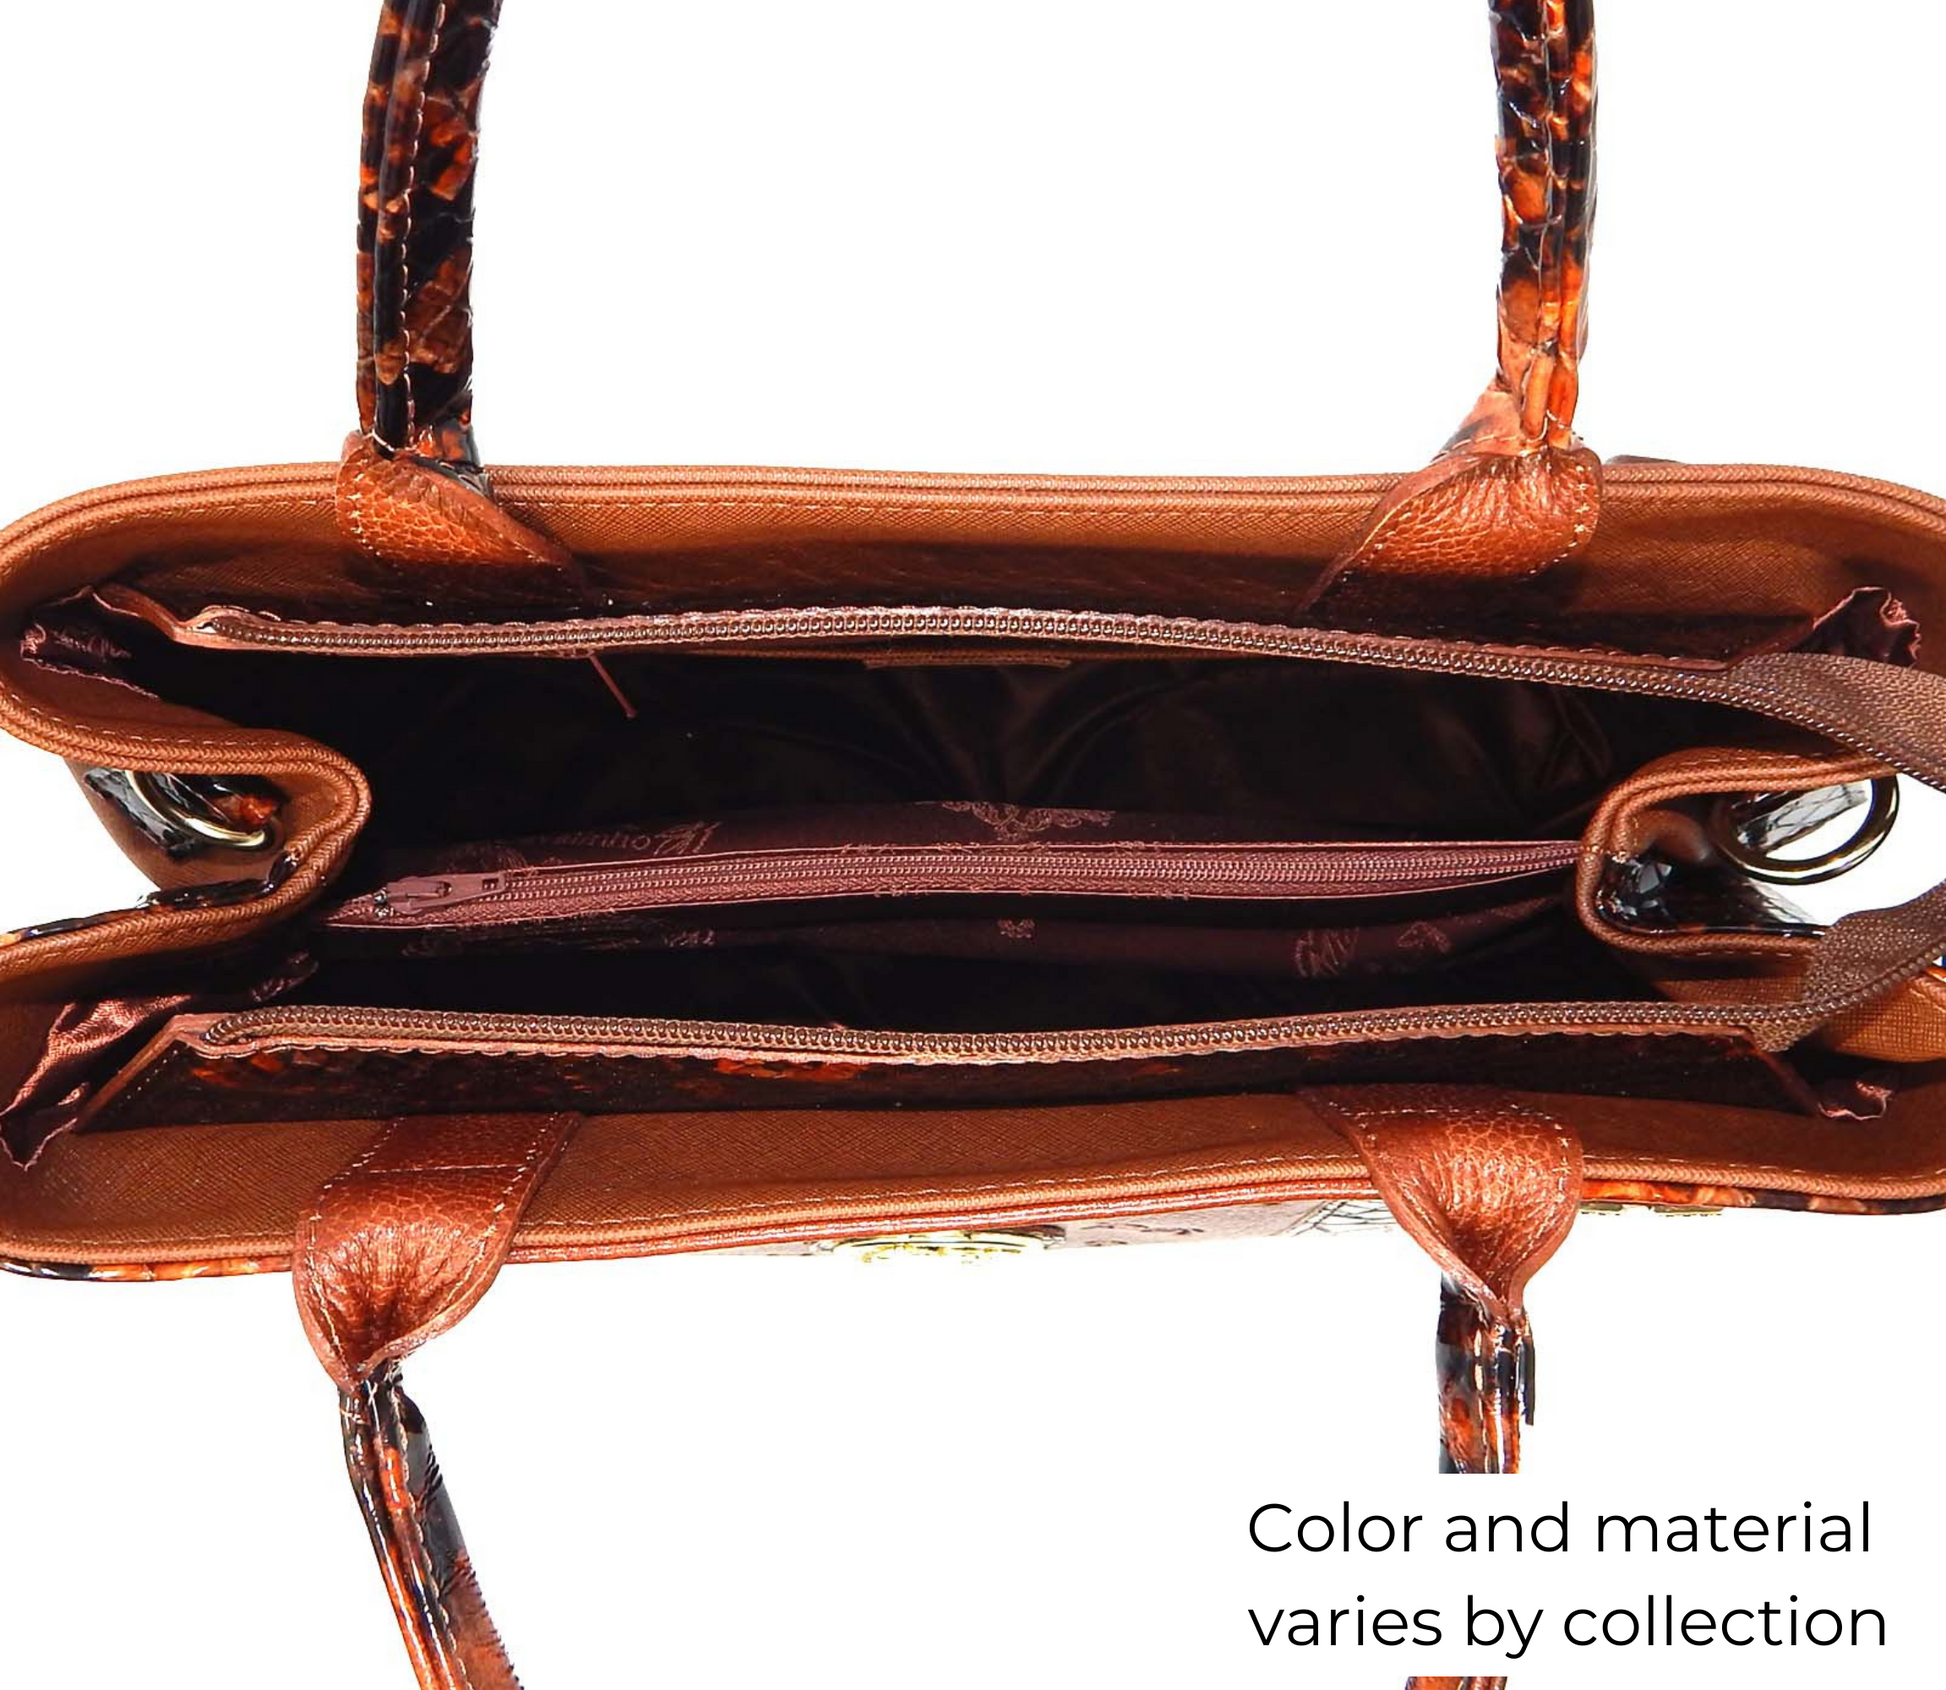 Cavalinho Royal Handbag - Black and White - inside_0145_d8da2c78-85b5-4d0b-ae93-da59d20219b7